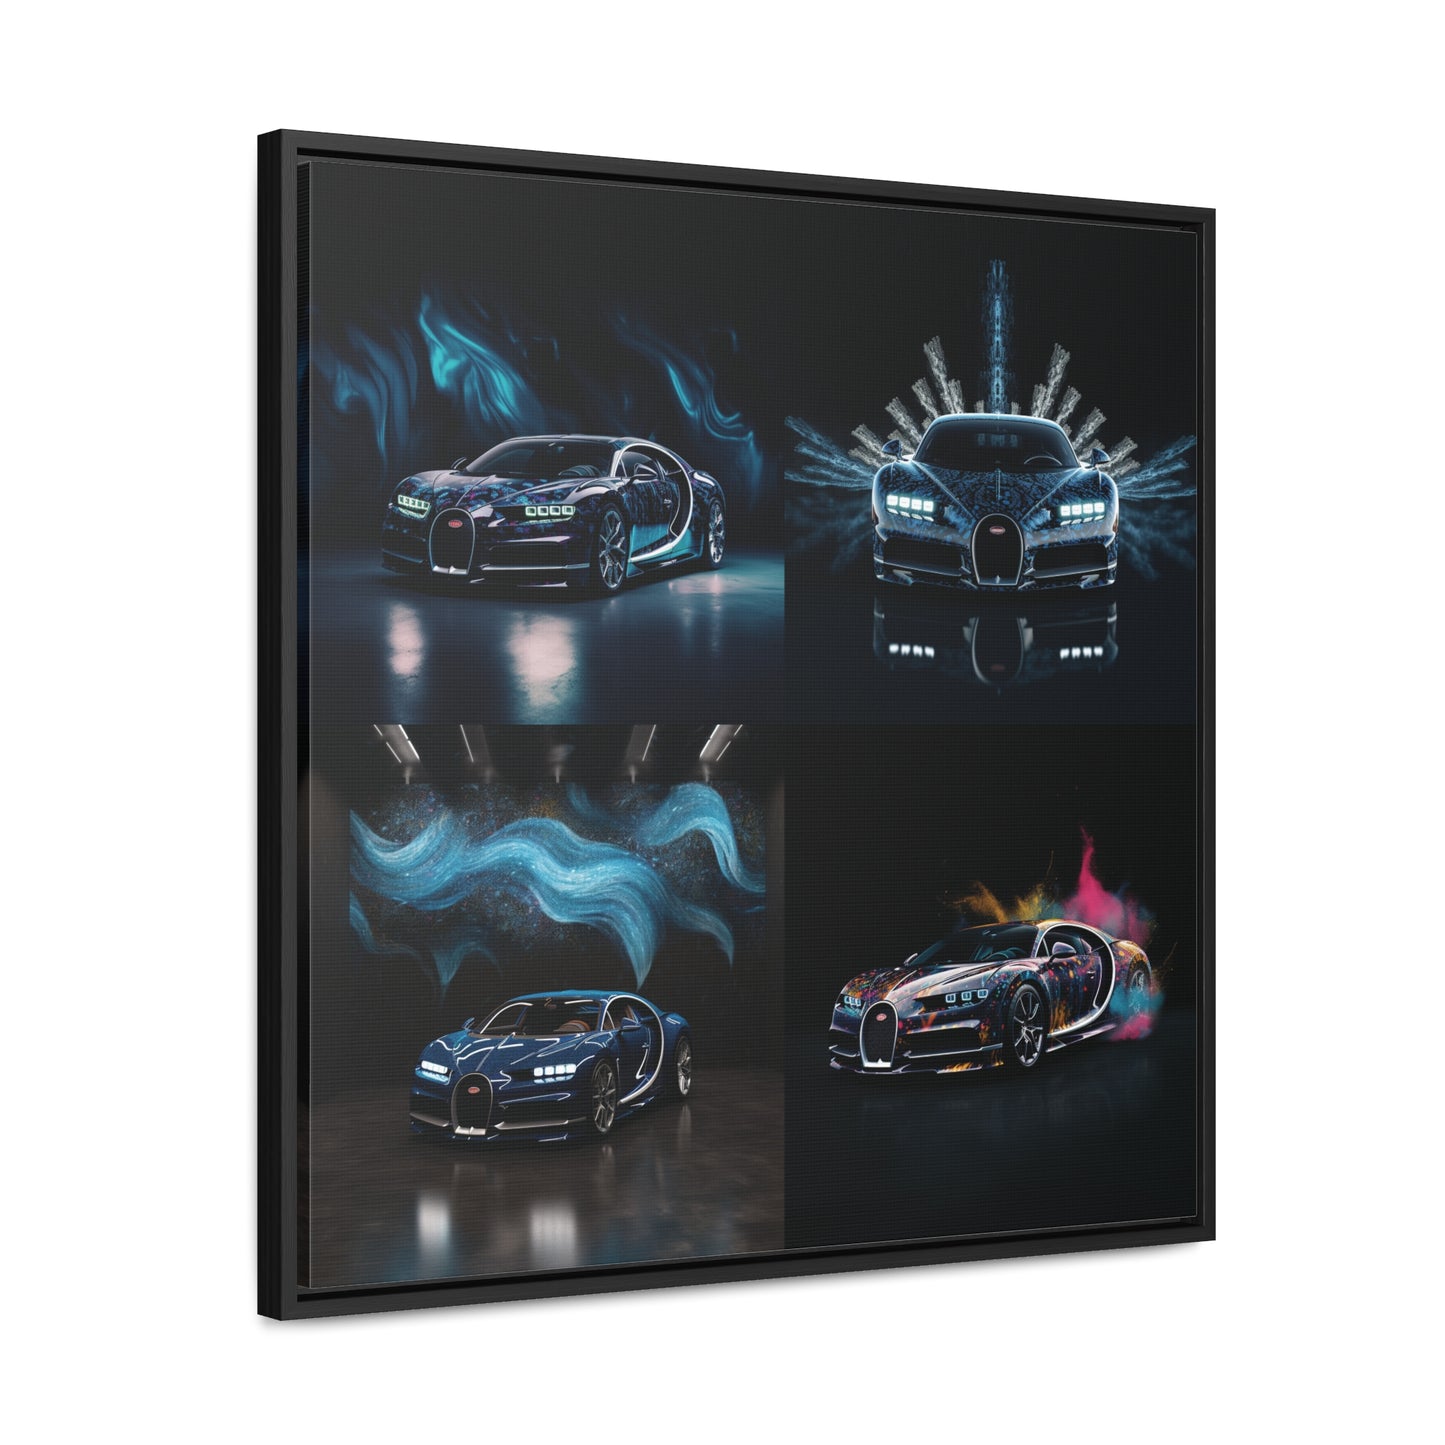 Gallery Canvas Wraps, Square Frame Hyper Bugatti 5